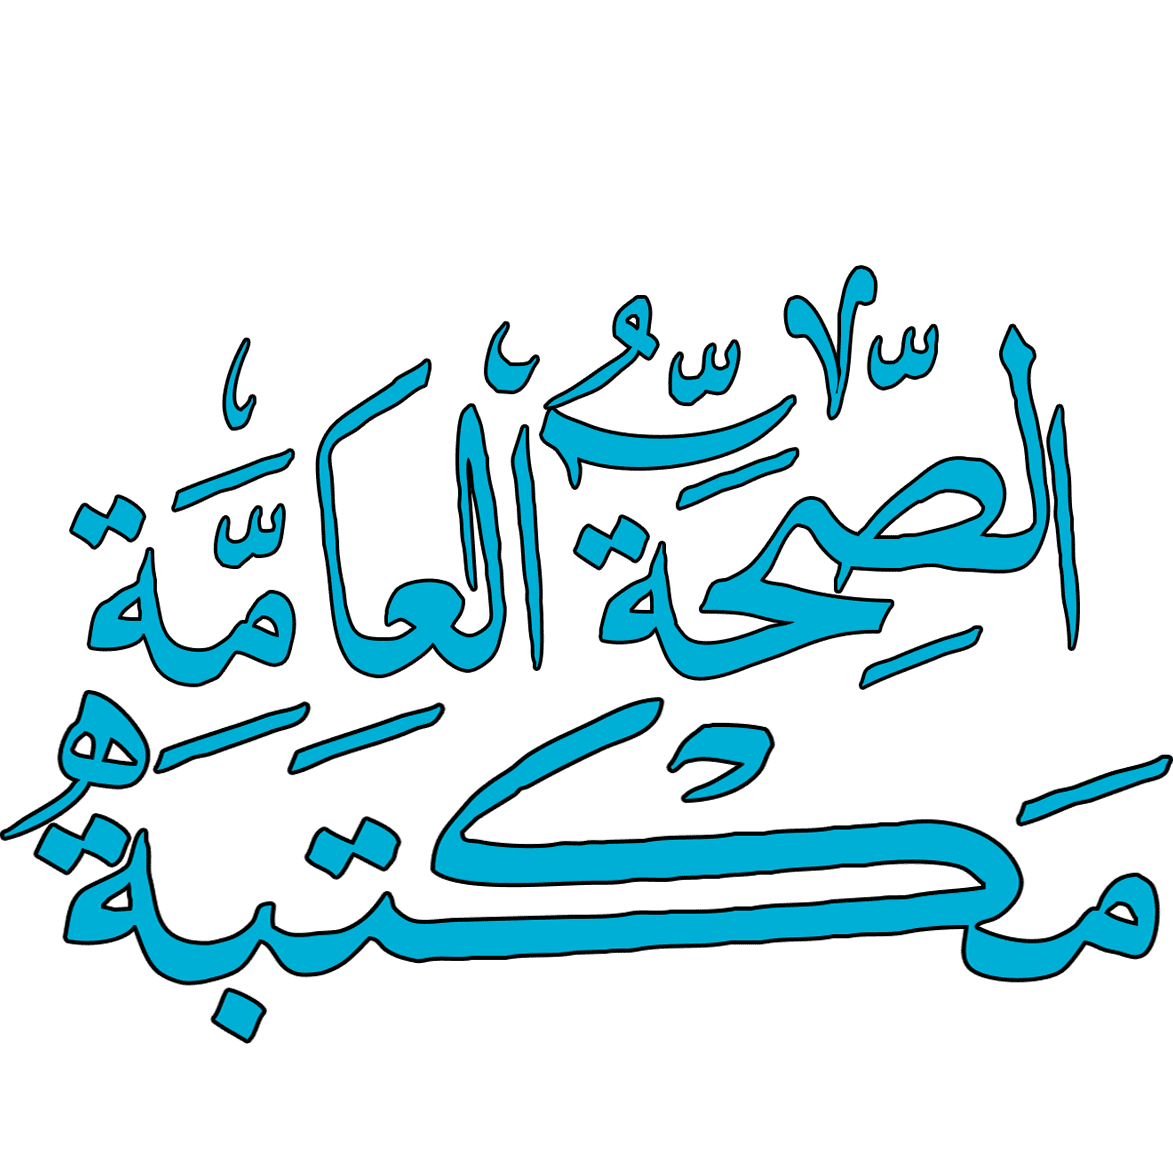  الدايت باللغة العربية